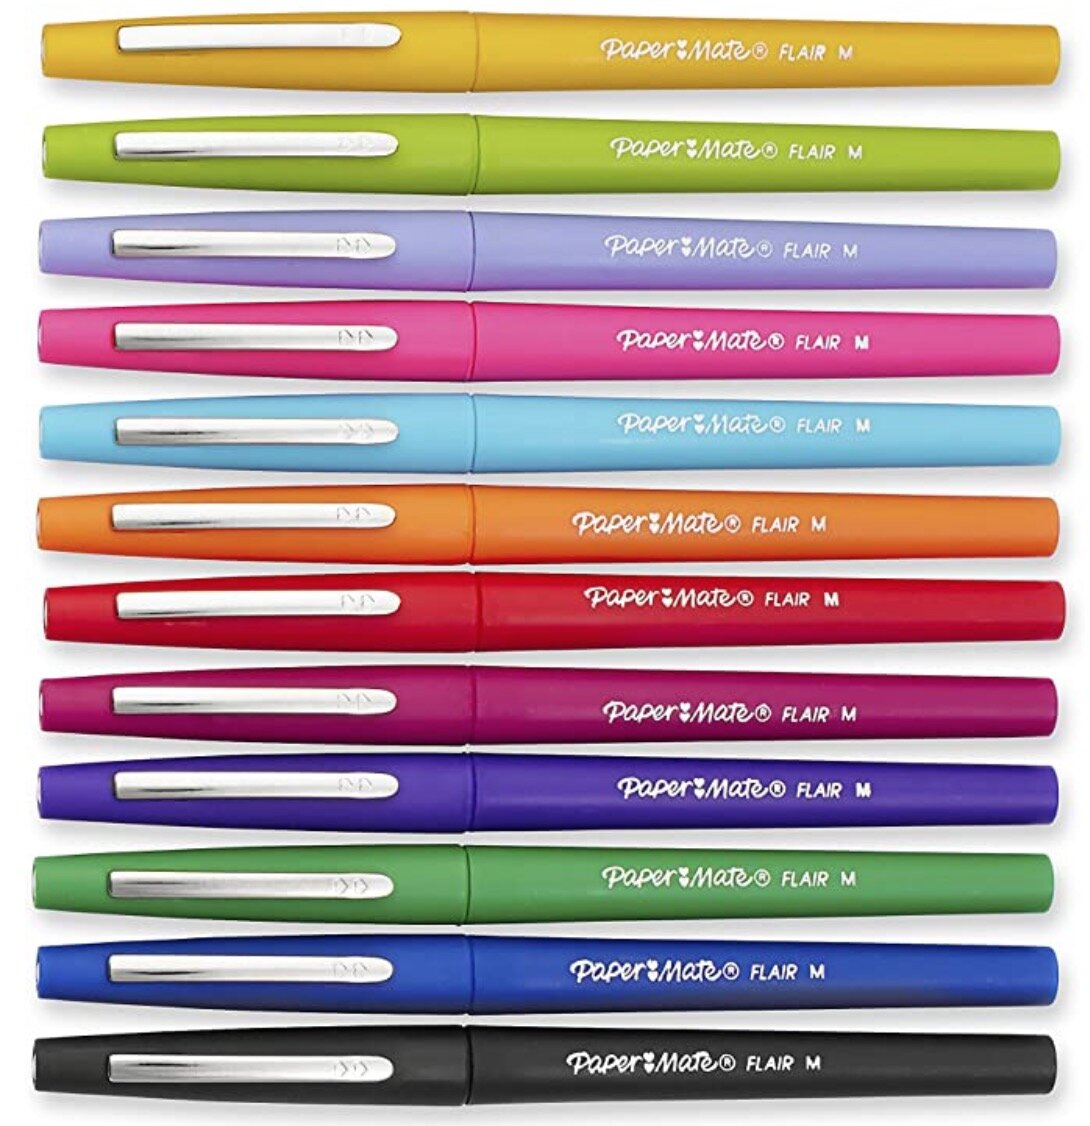 Paper mate pens